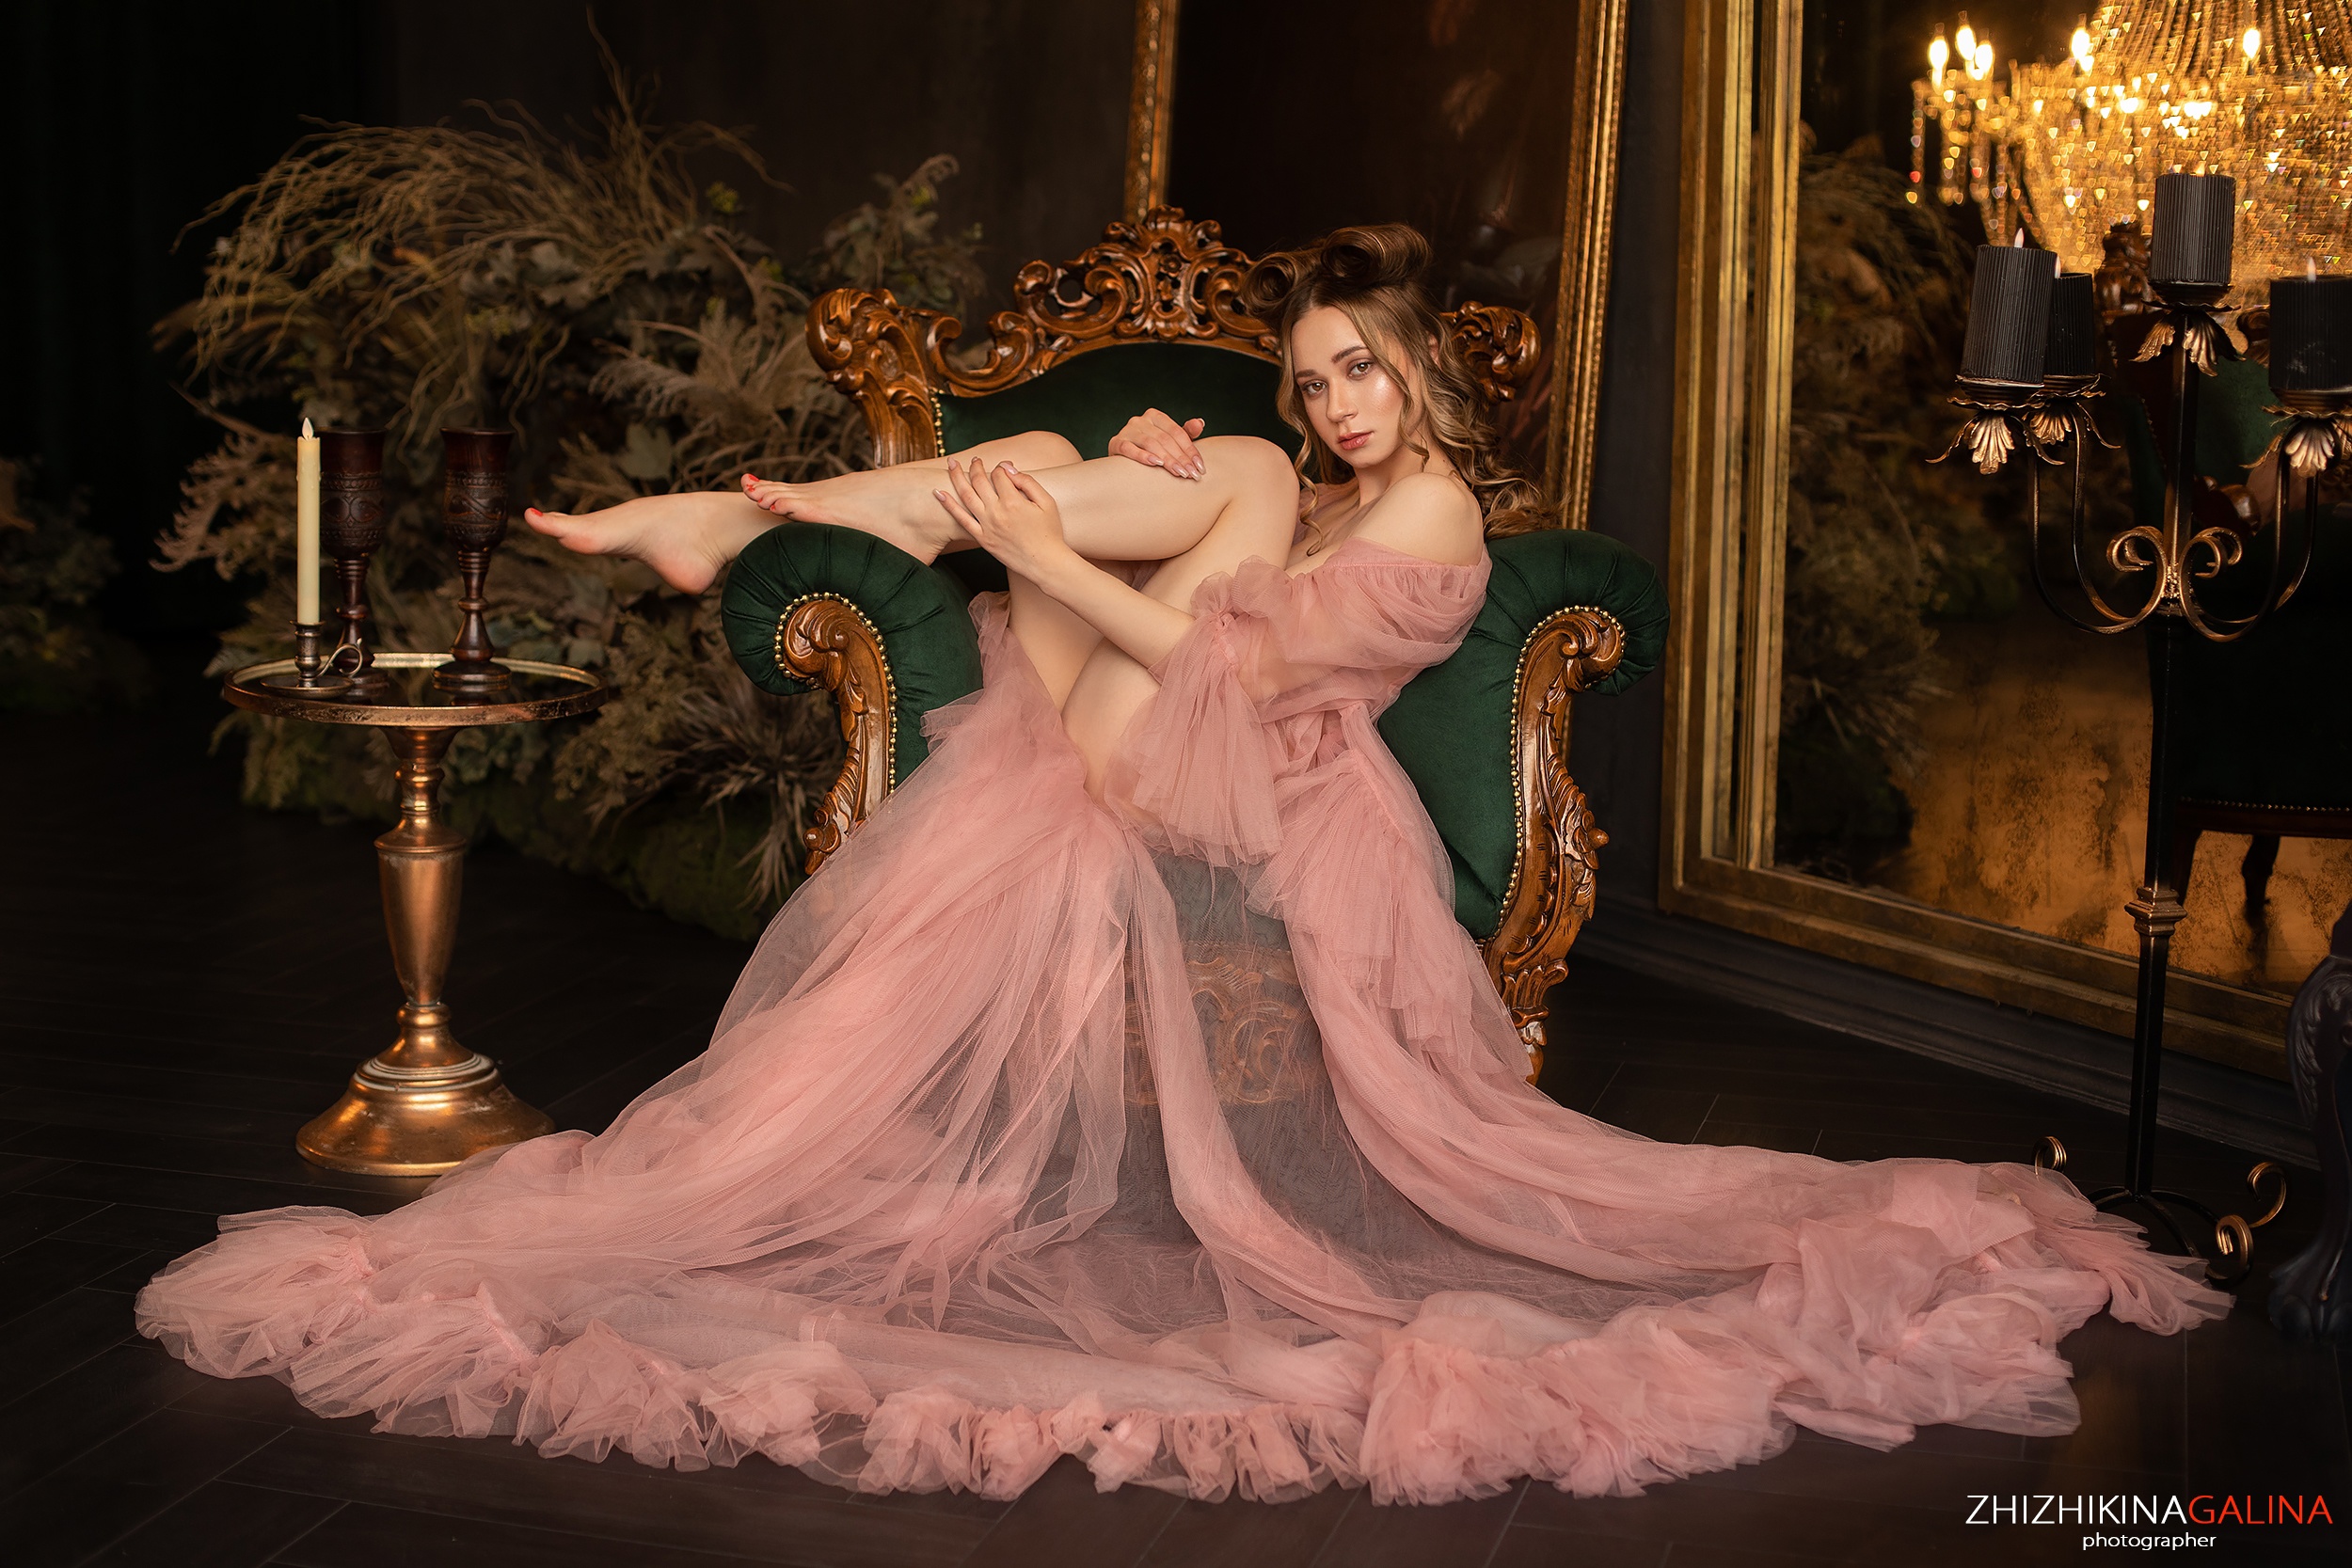 Galina Zhizhikina Women Pink Dress Barefoot Glamour Legs Holding Legs 2500x1667